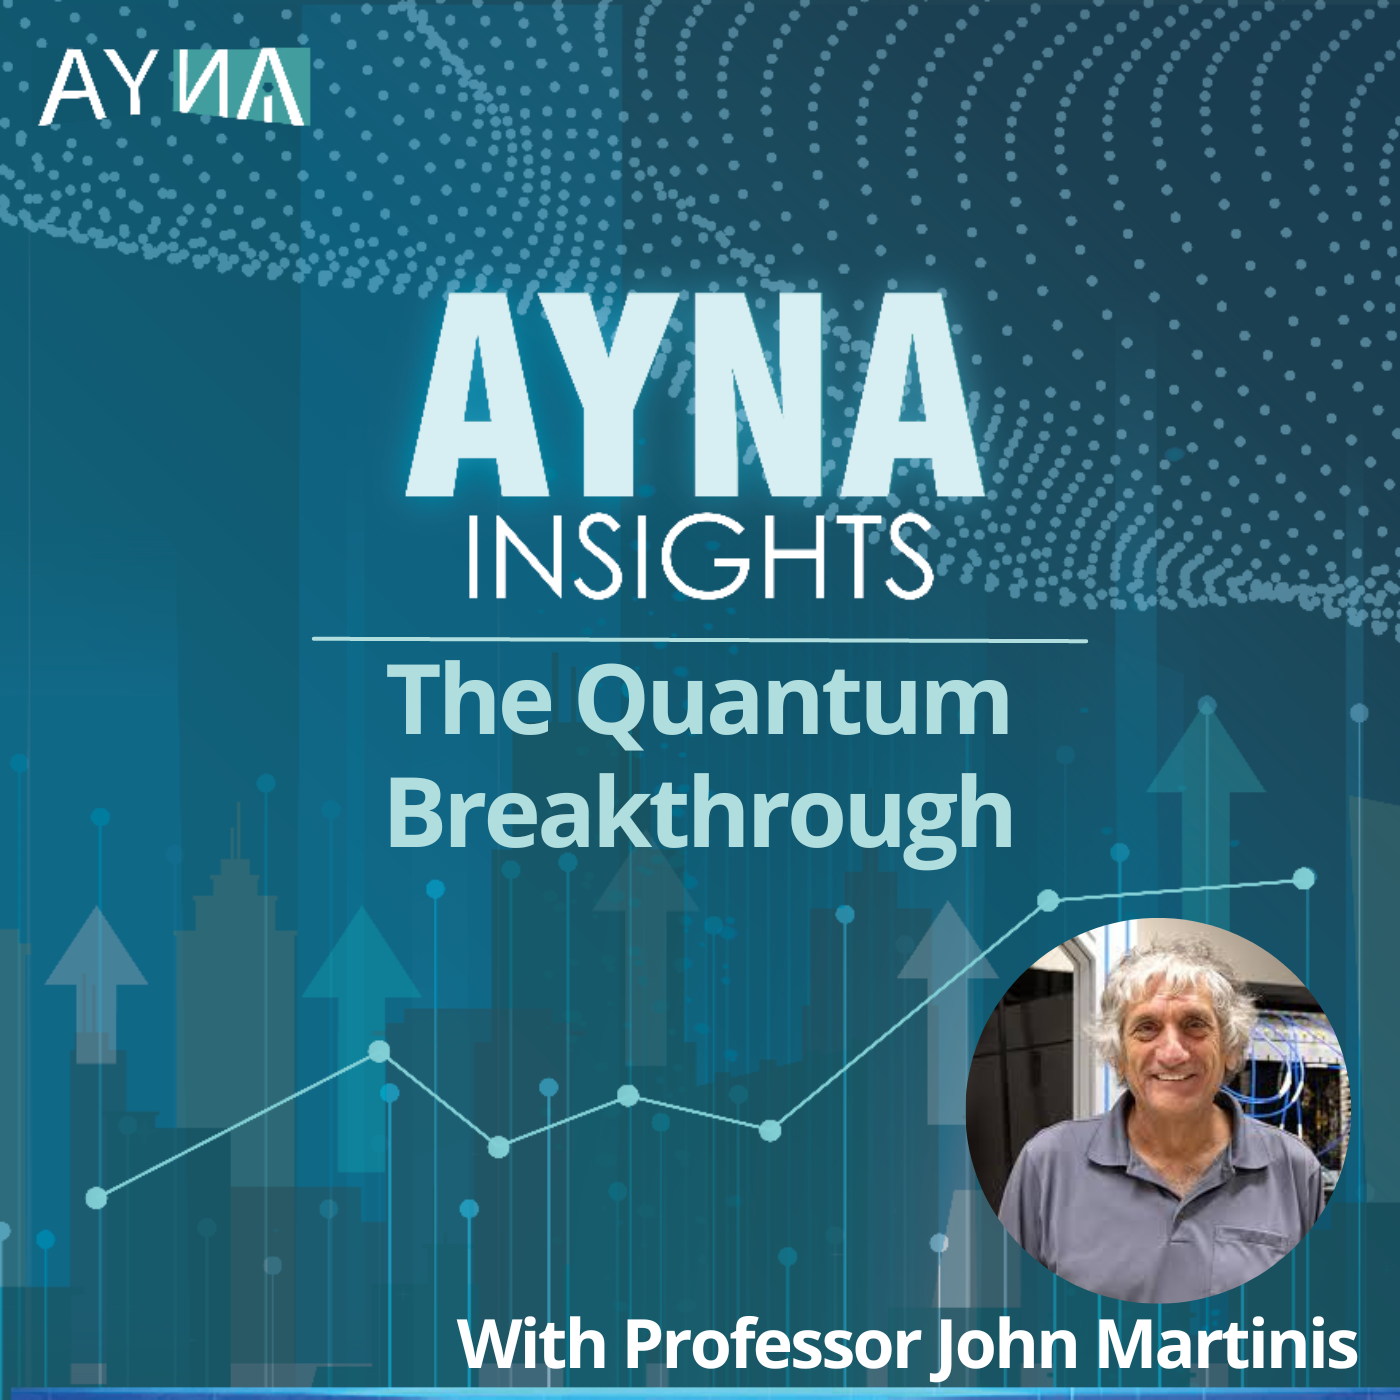 Professor John Martinis: The Quantum Breakthrough